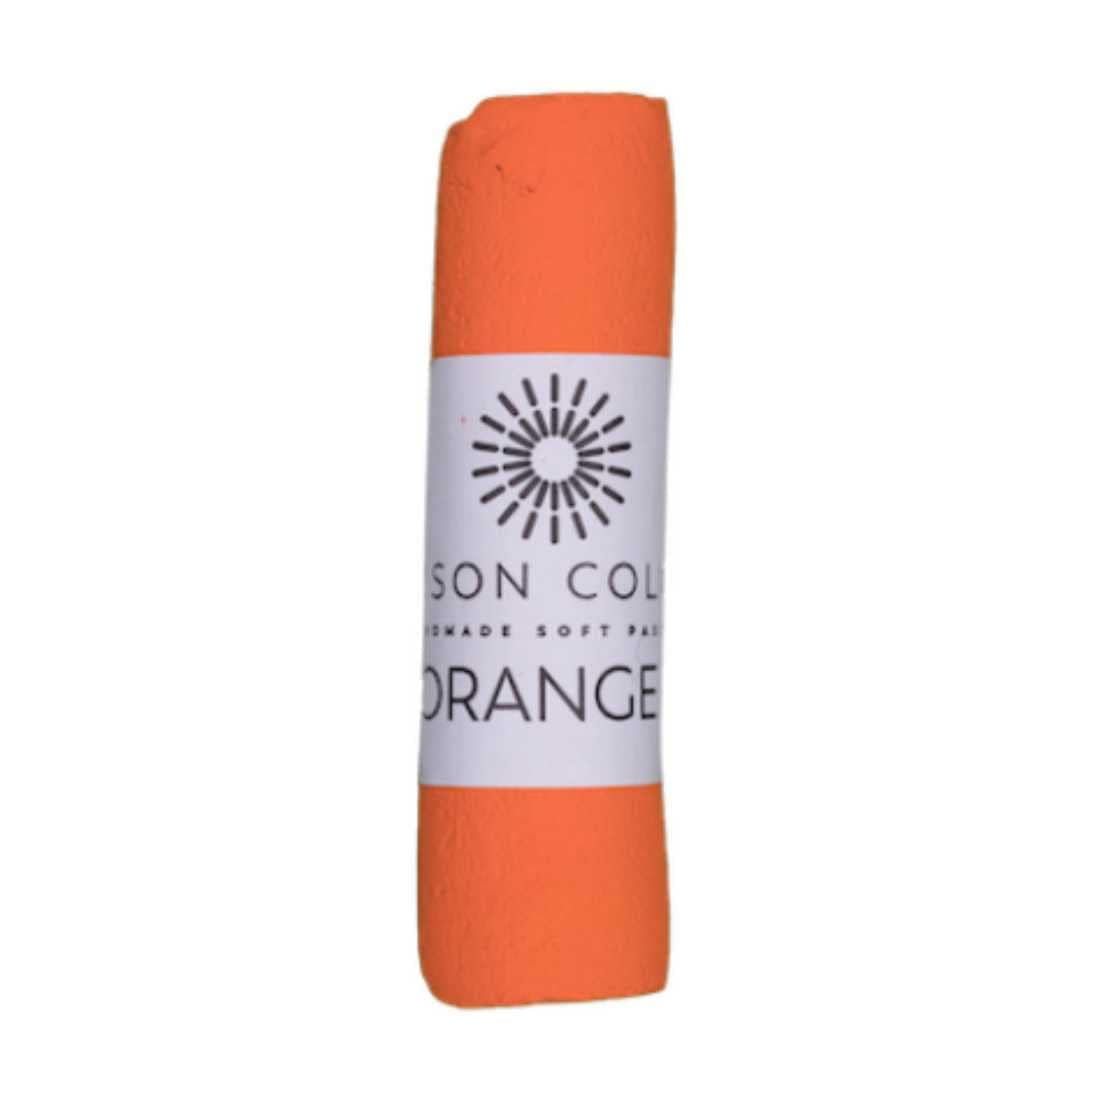 Unison Colour Soft Pastel #1 Unison Colour - Individual Handmade Soft Pastels - Orange Hues